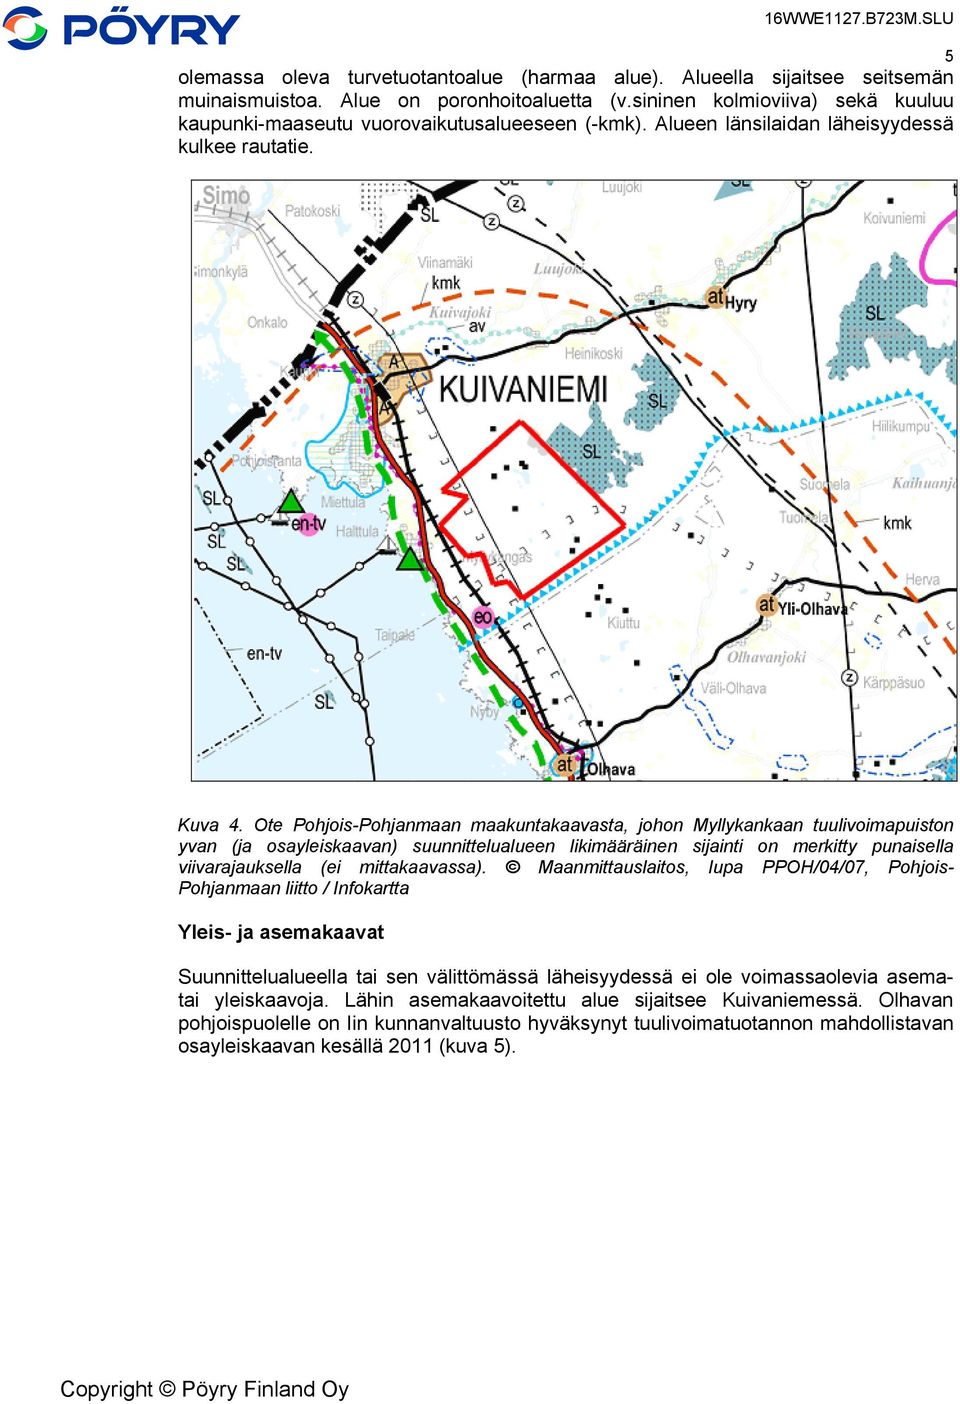 Ote Pohjois-Pohjanmaan maakuntakaavasta, johon Myllykankaan tuulivoimapuiston yvan (ja osayleiskaavan) suunnittelualueen likimääräinen sijainti on merkitty punaisella viivarajauksella (ei